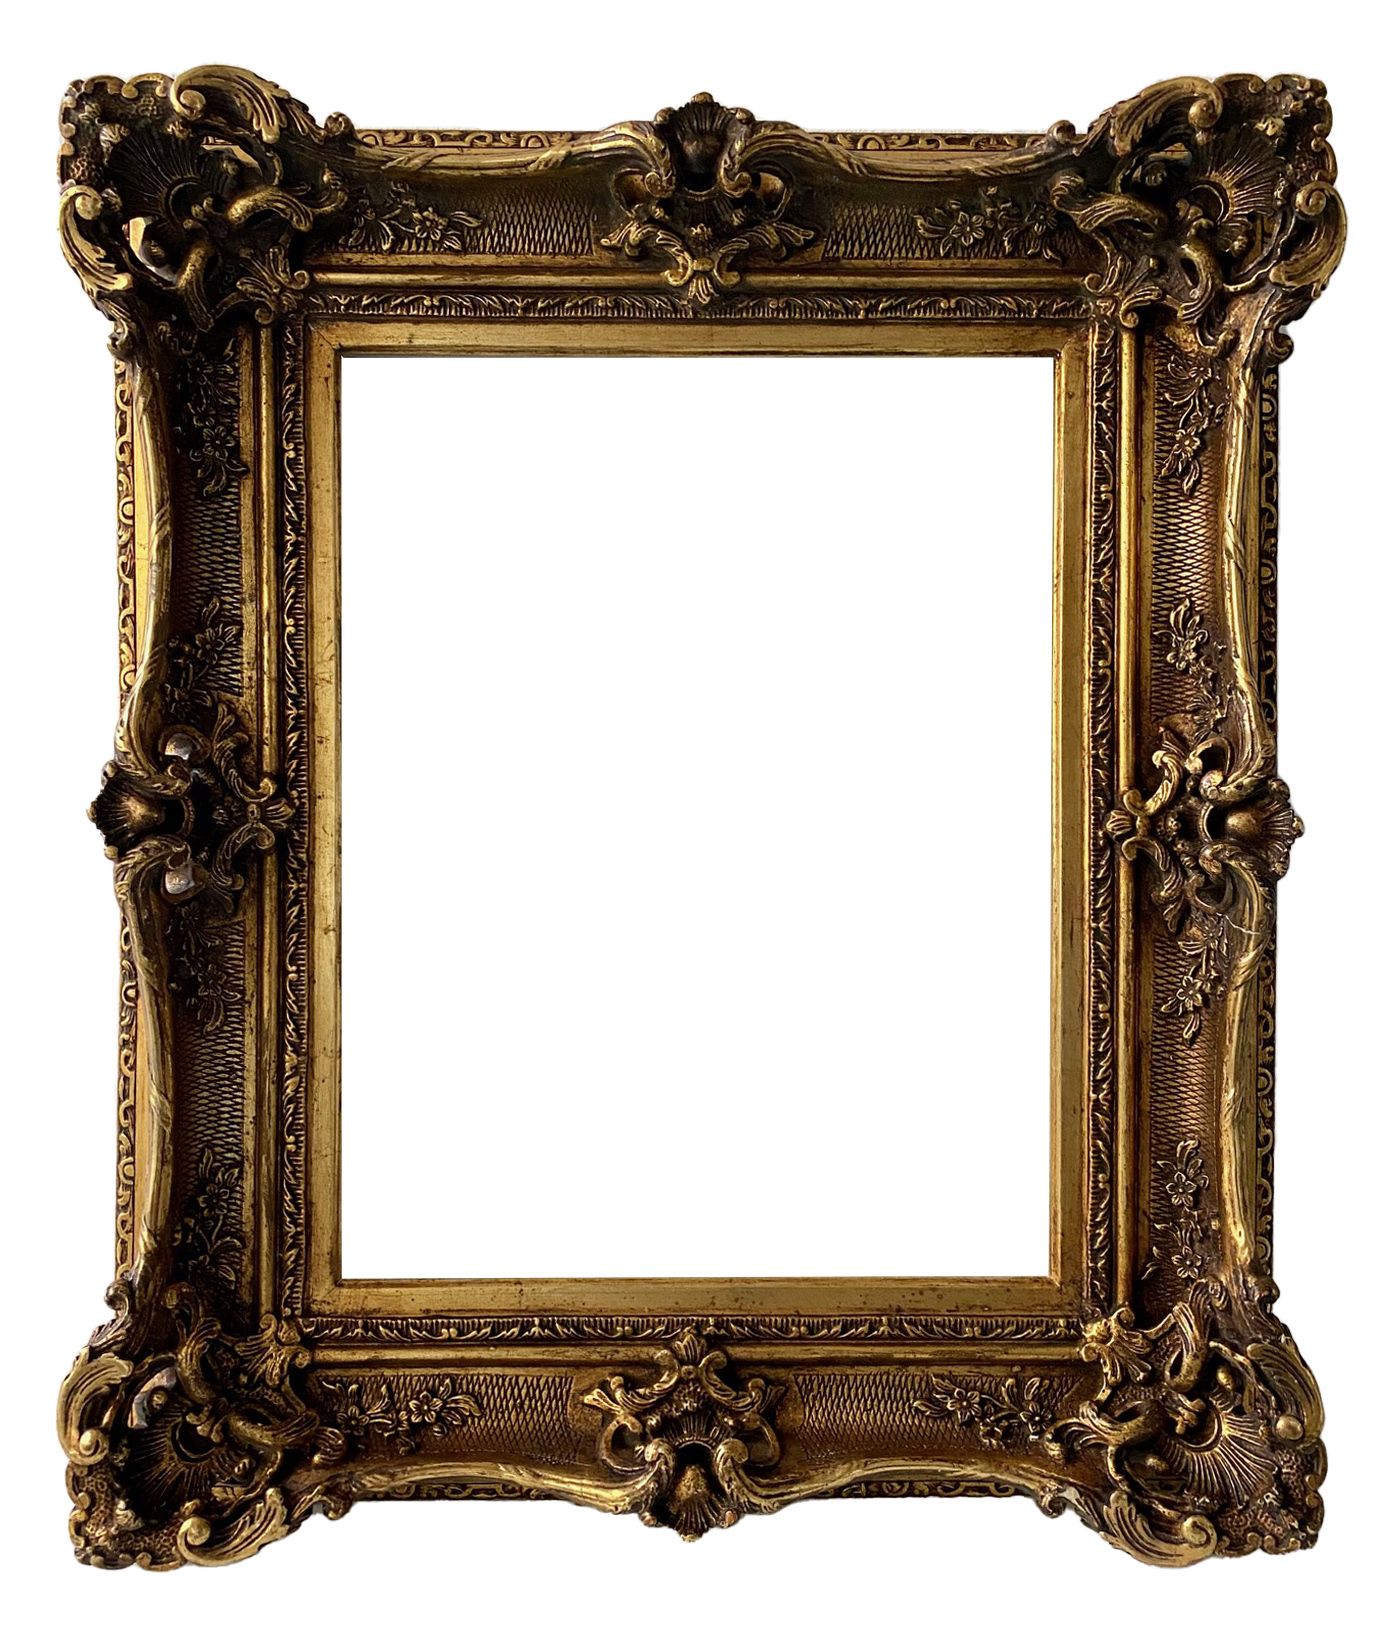 Cadre de style Louis XV - 36,20 x 28,40 - REF - 1365